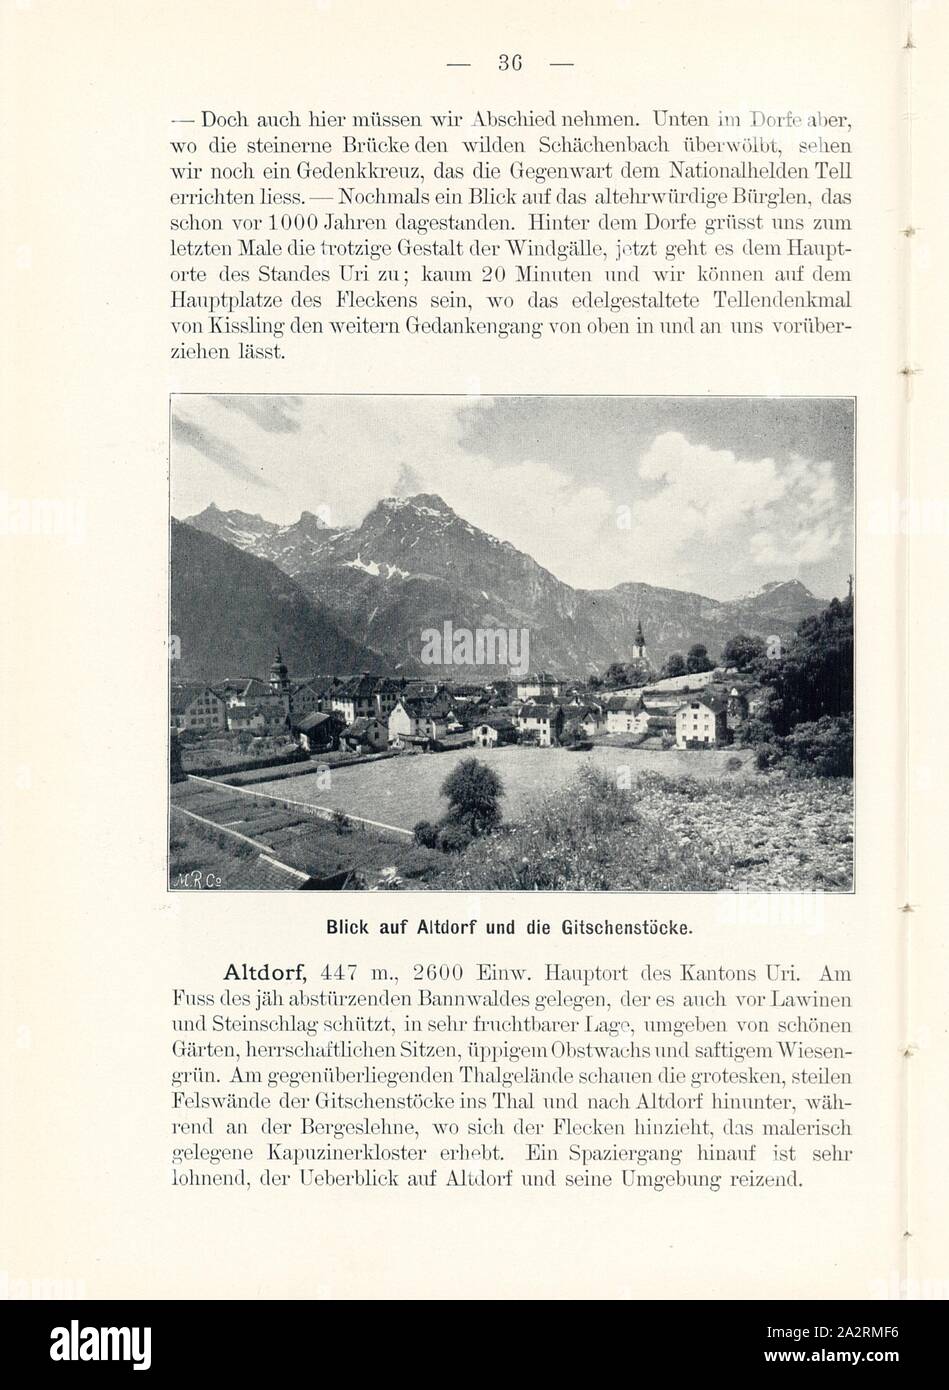 View of Altdorf and the Gitschenstöcke, Altdorf in Canton Uri, Signed: M.R.C, Fig. 34, p. 36, Meisenbach, Riffarth und Co. (imp.), 1900, J. Knobel: Illustrierter Reisebegleiter für die Alpenstrasse des Klausen und ihre Zufahrtslinien. Glarus: Buchdruckerei J. Spälti, 1900 Stock Photo